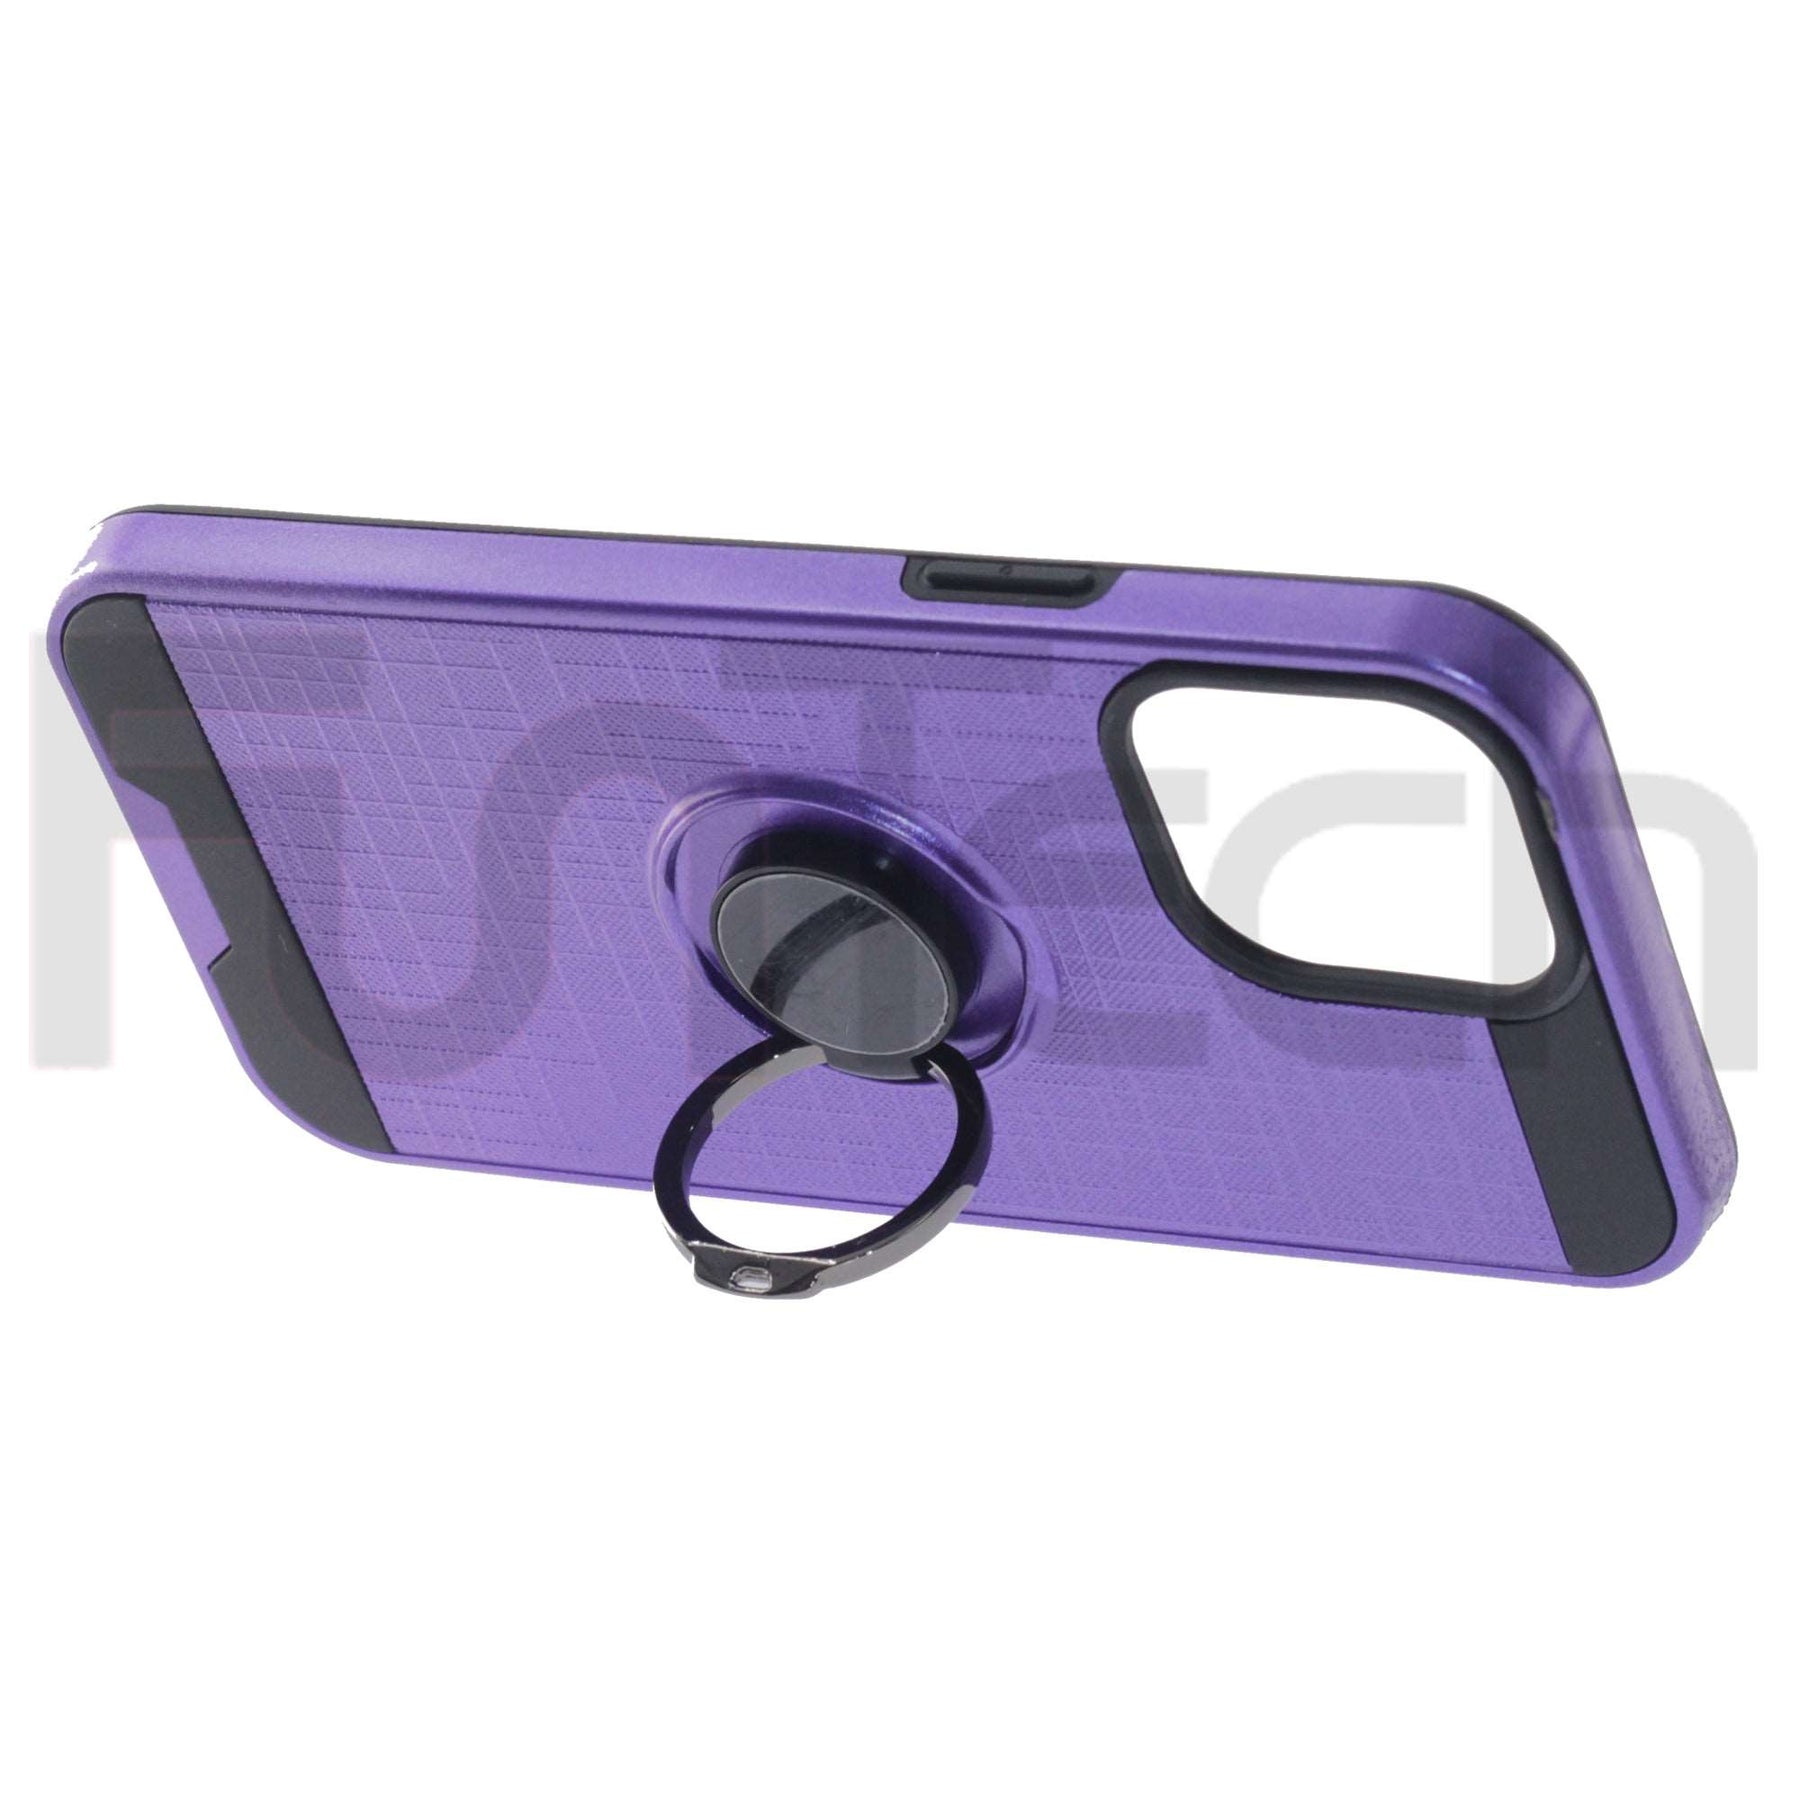 Apple iPhone 13 Mini, RingArmor Case, Color Purple.